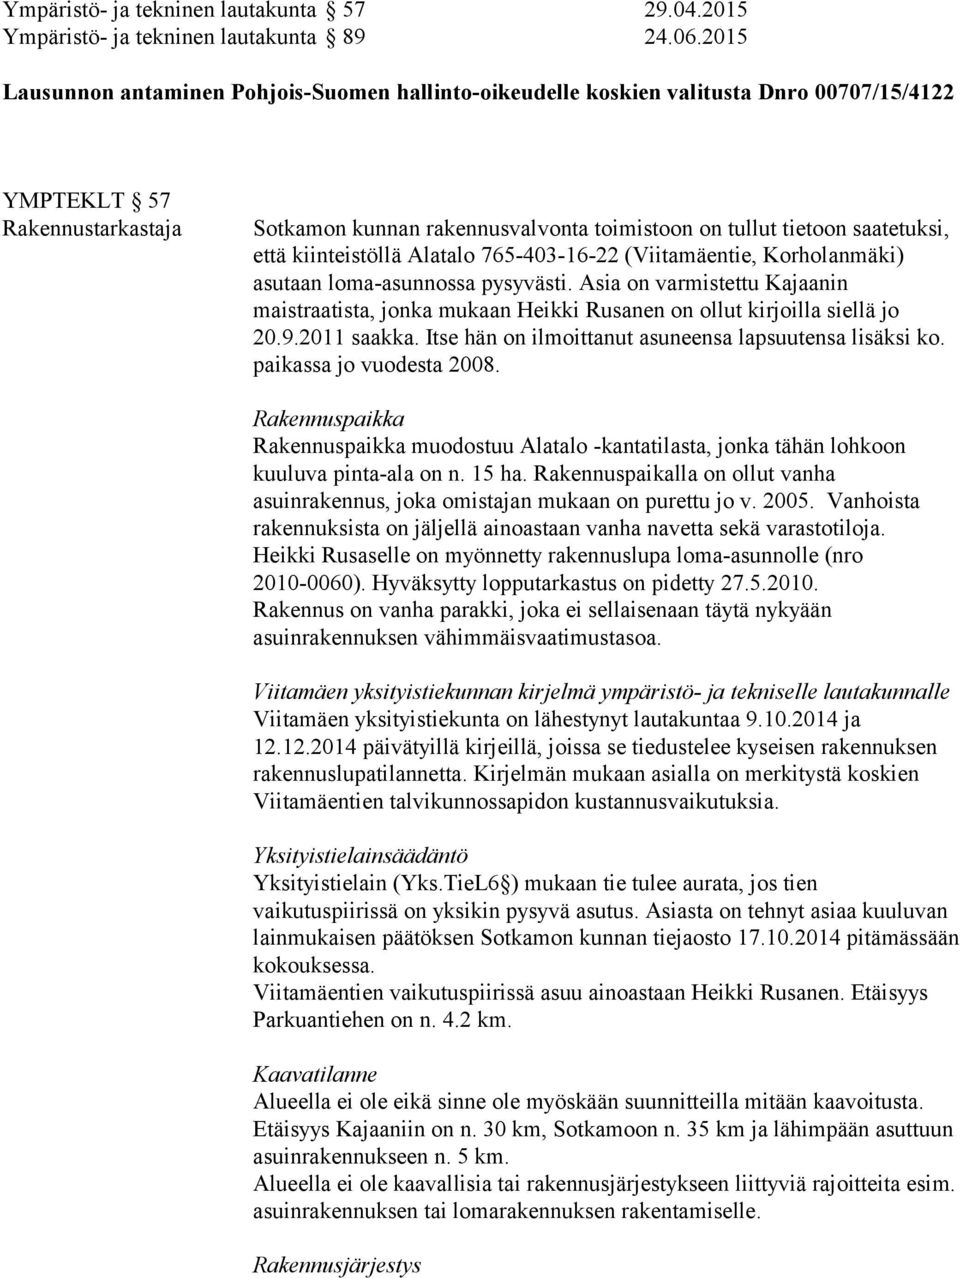 saatetuksi, että kiinteistöllä Alatalo 765-403-16-22 (Viitamäentie, Korholanmäki) asutaan loma-asunnossa pysyvästi.